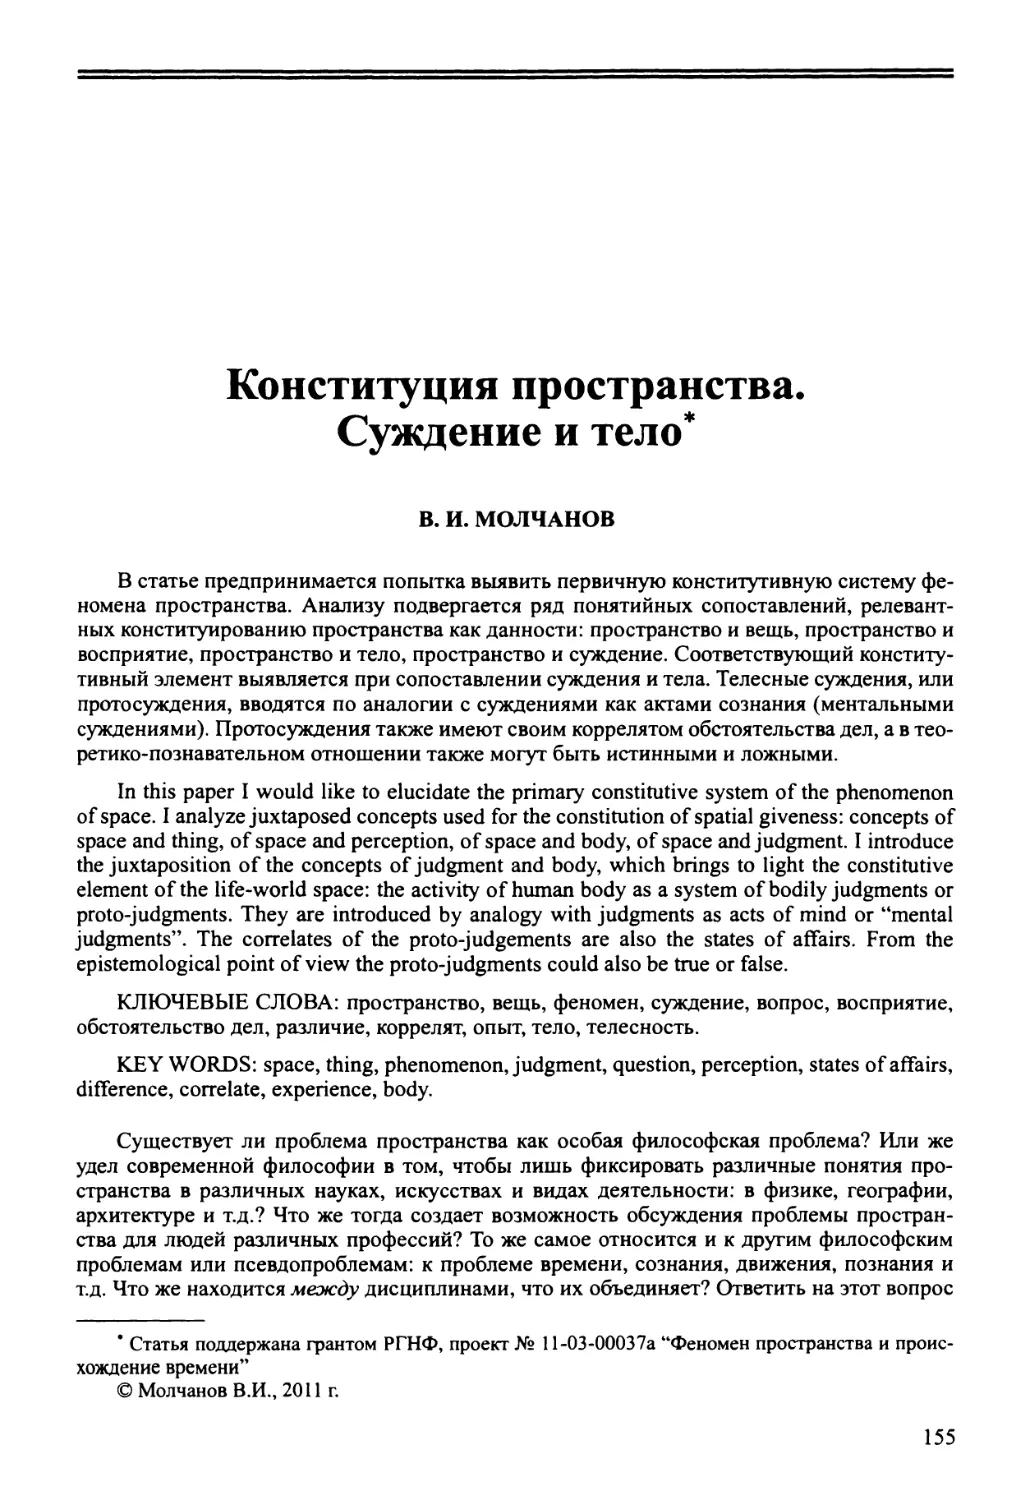 В.И. Молчанов - Конституция пространства. Суждение и тело